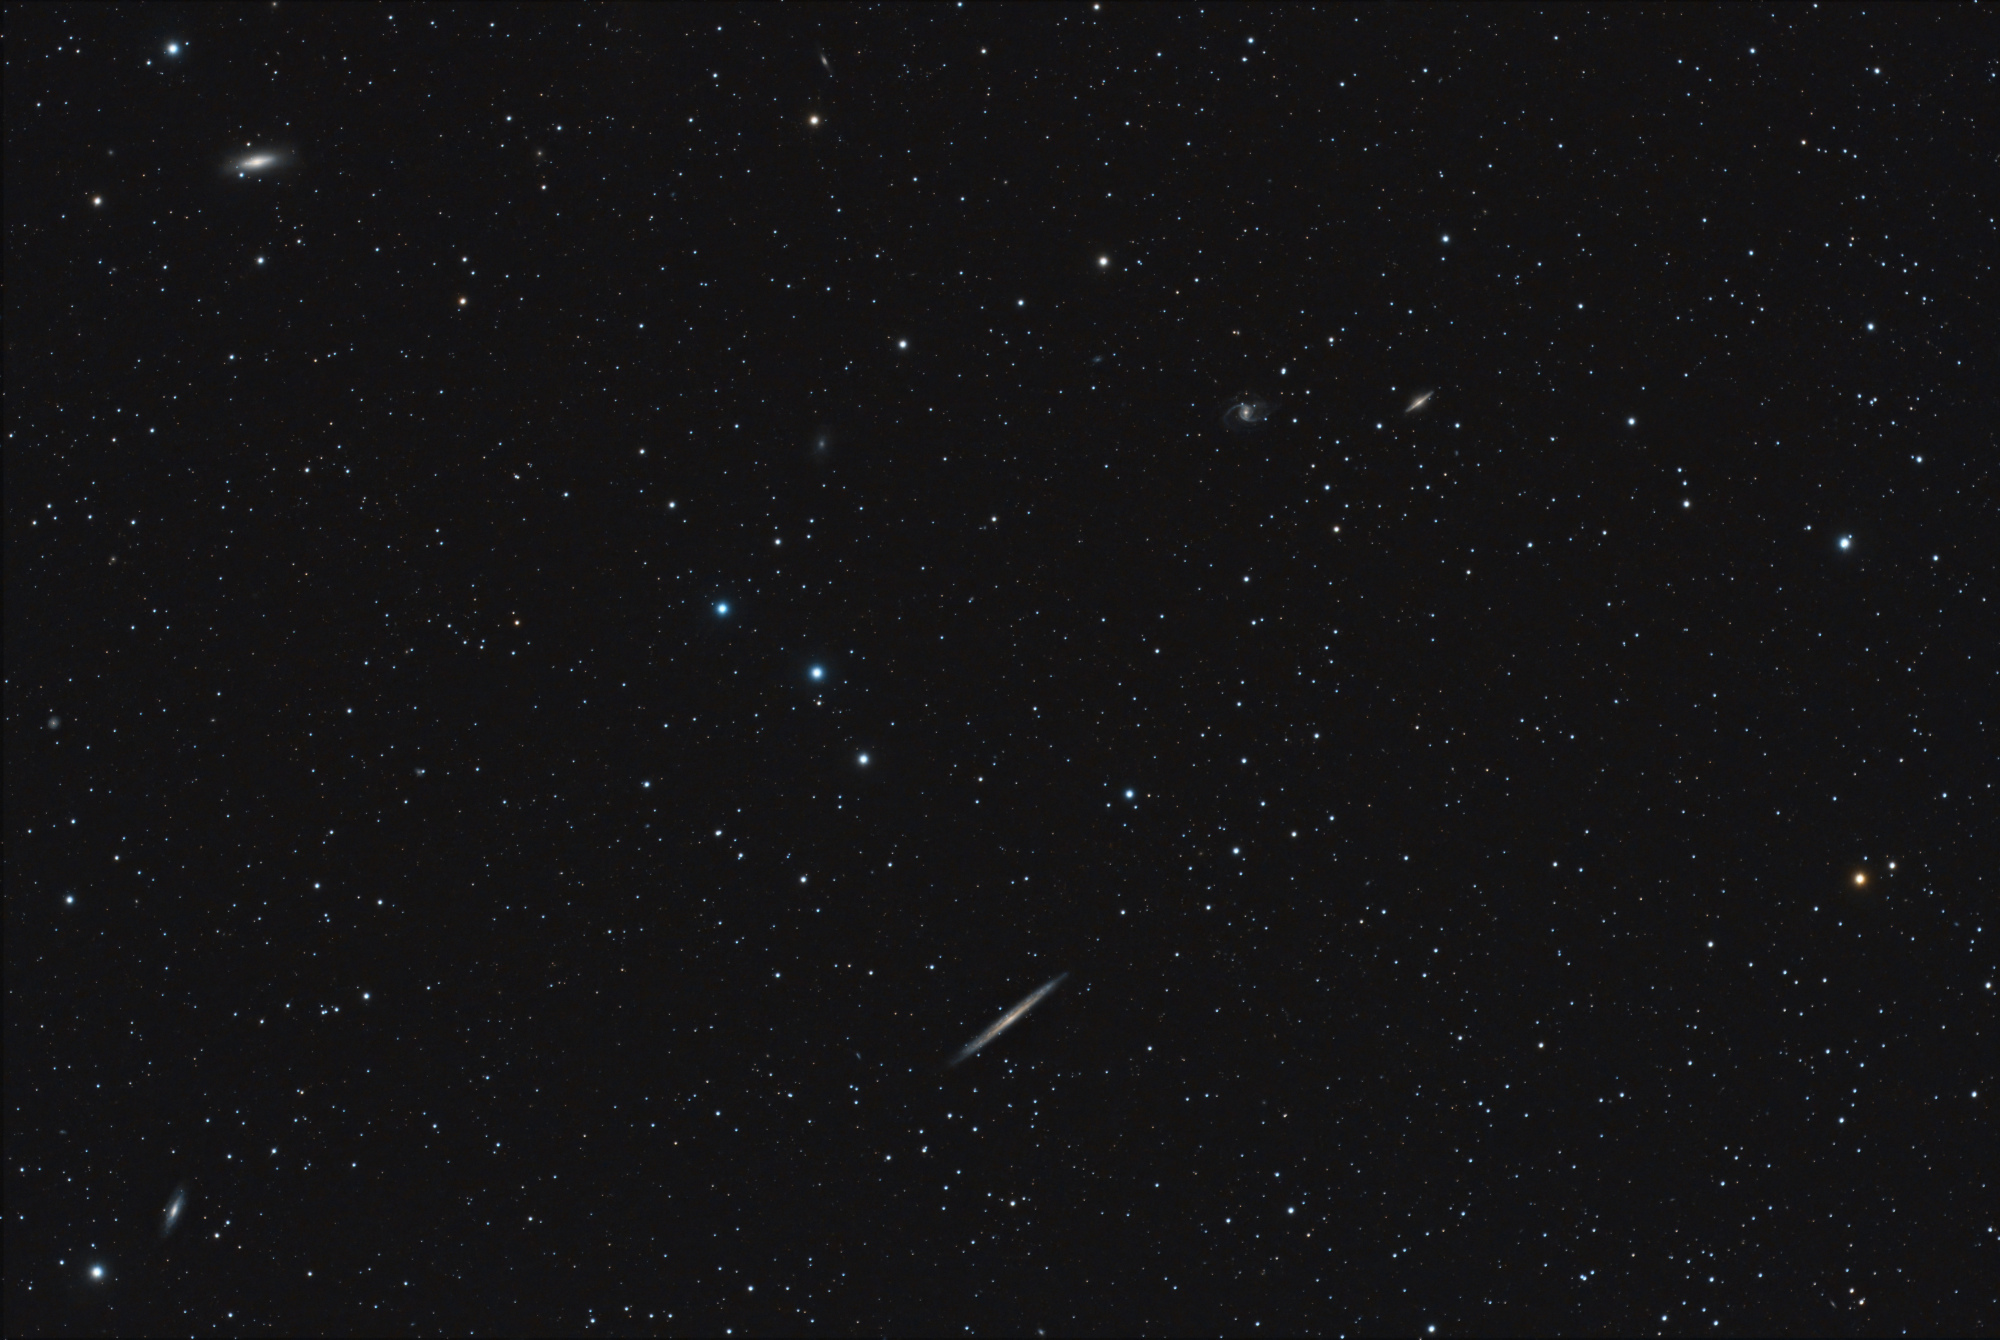 NGC5907-Berche-70x180sec-LPSD2.thumb.jpg.61170831cfe0b7c28060c2538e774a93.jpg